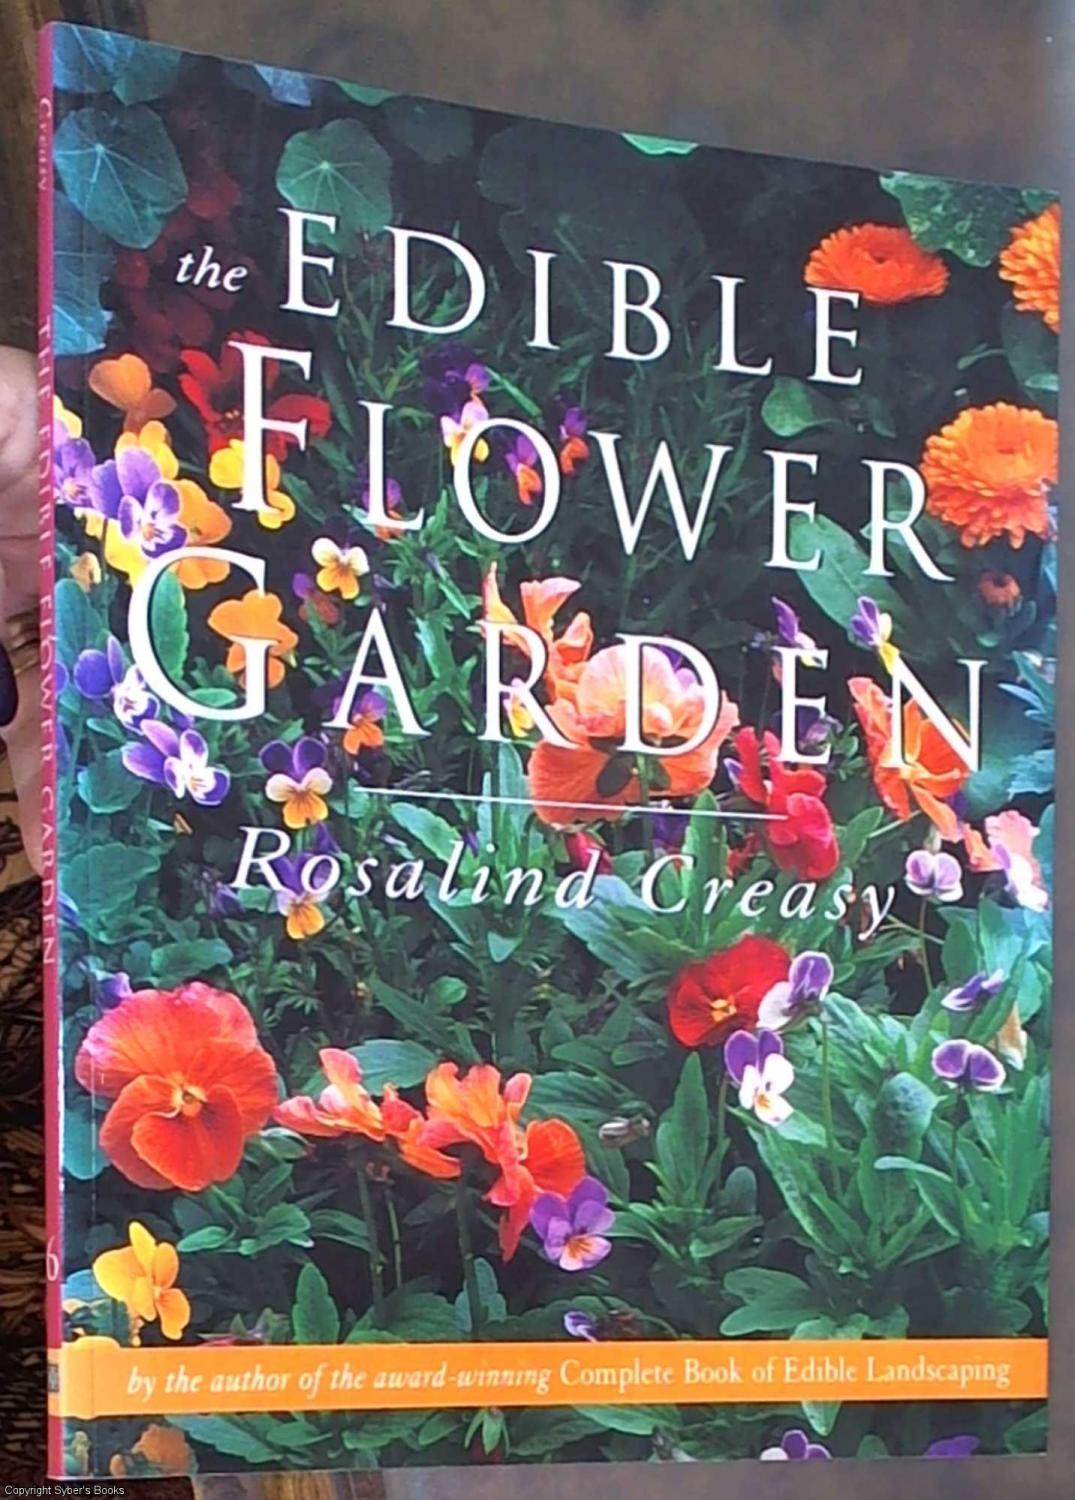 the edible flower garden de creasy, rosalind: periplus editions